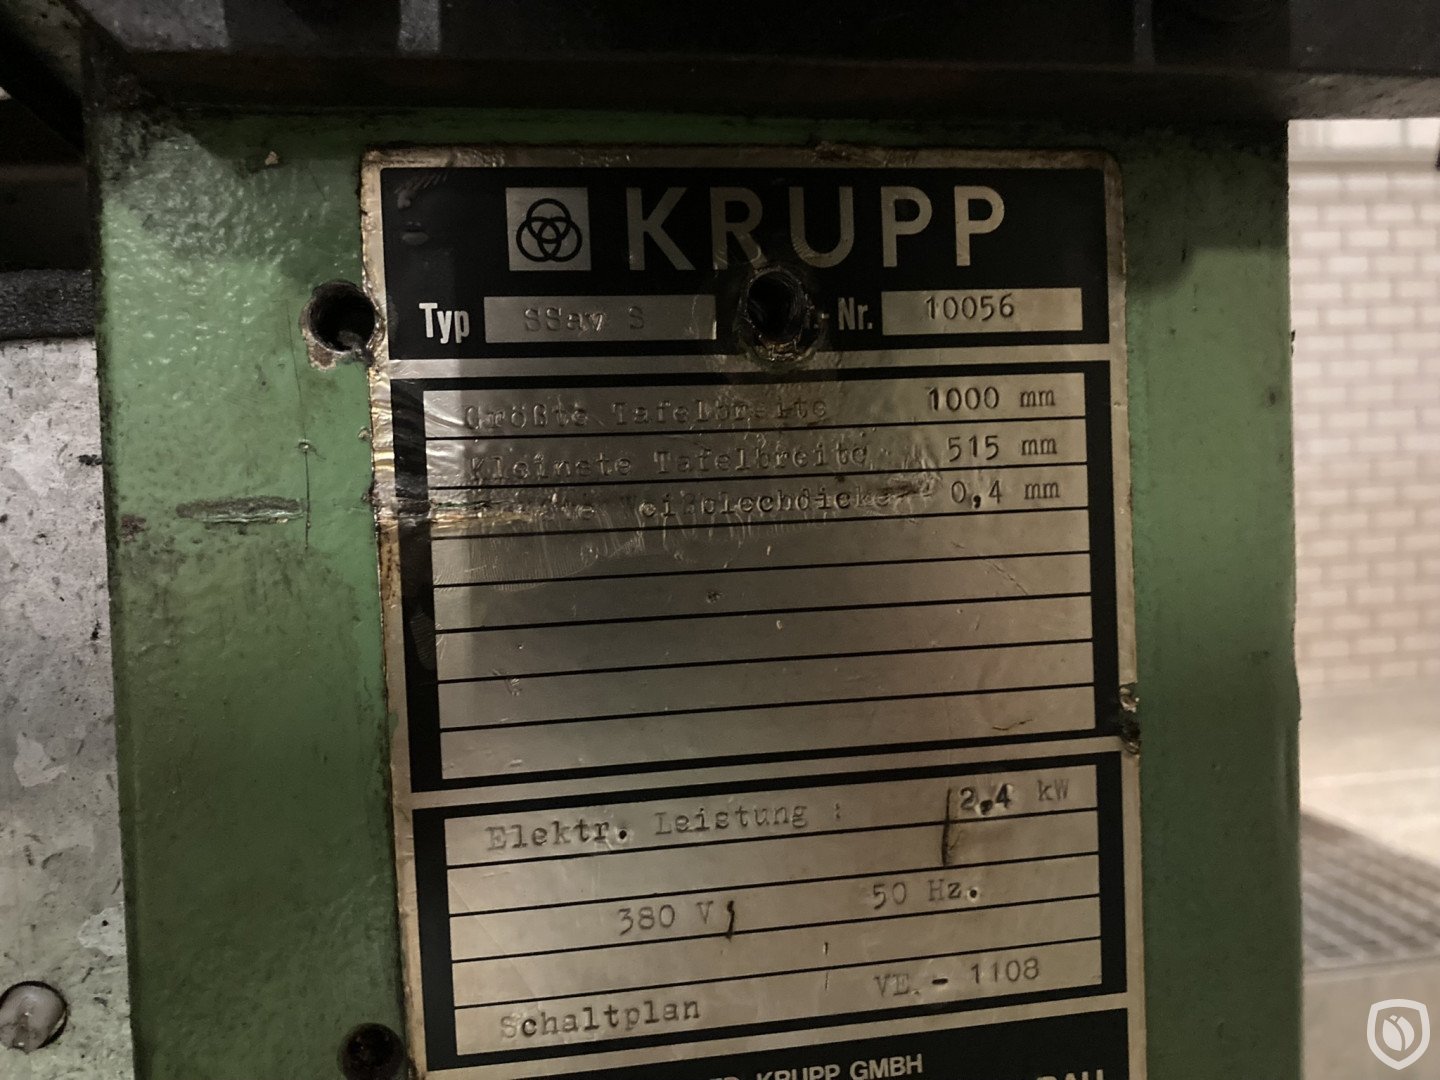 Krupp SP II